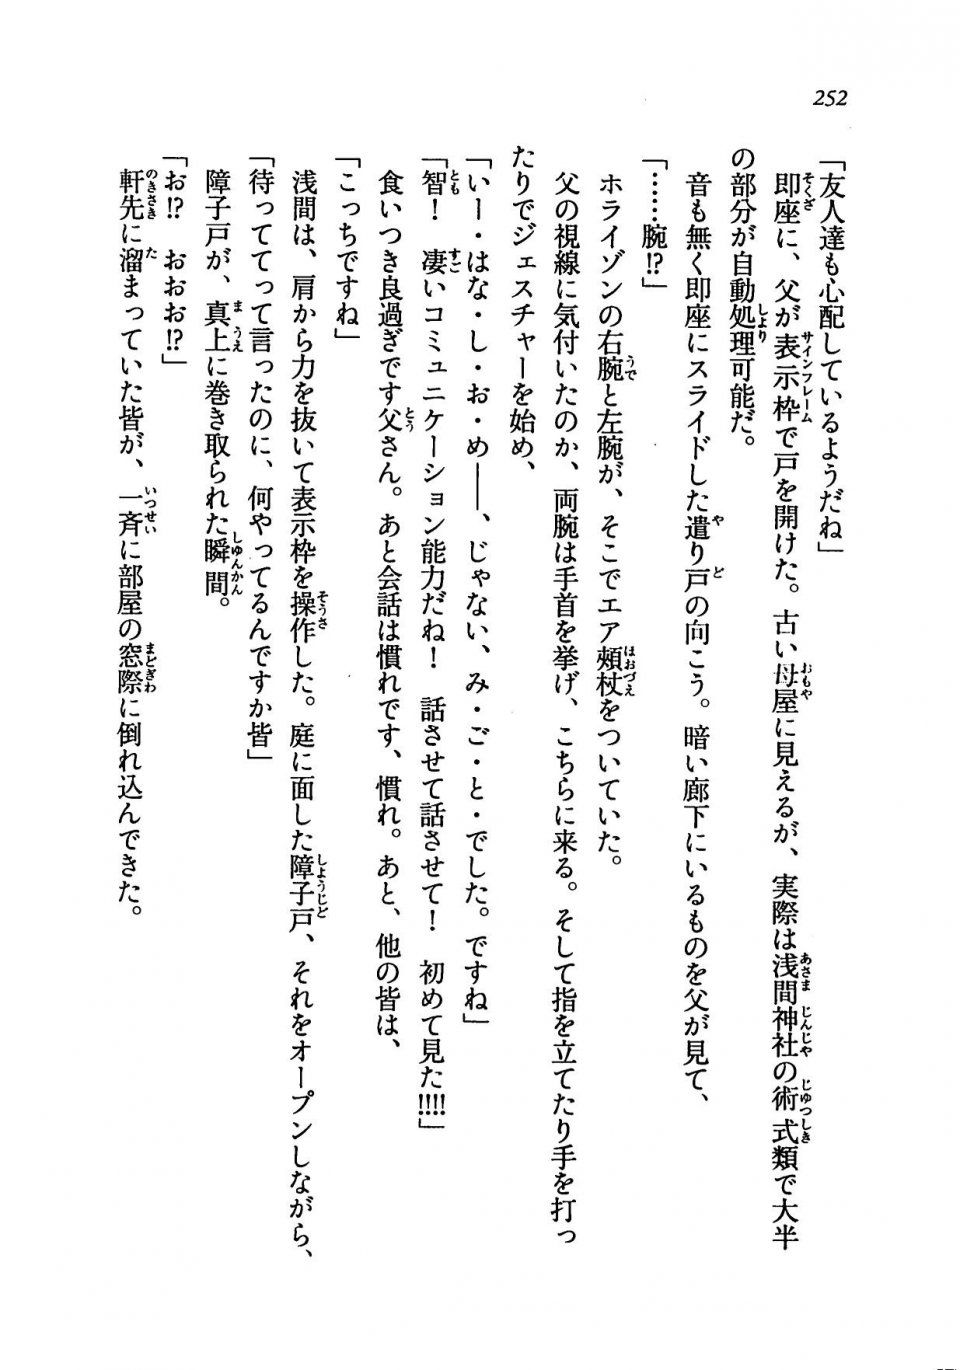 Kyoukai Senjou no Horizon LN Vol 19(8A) - Photo #252